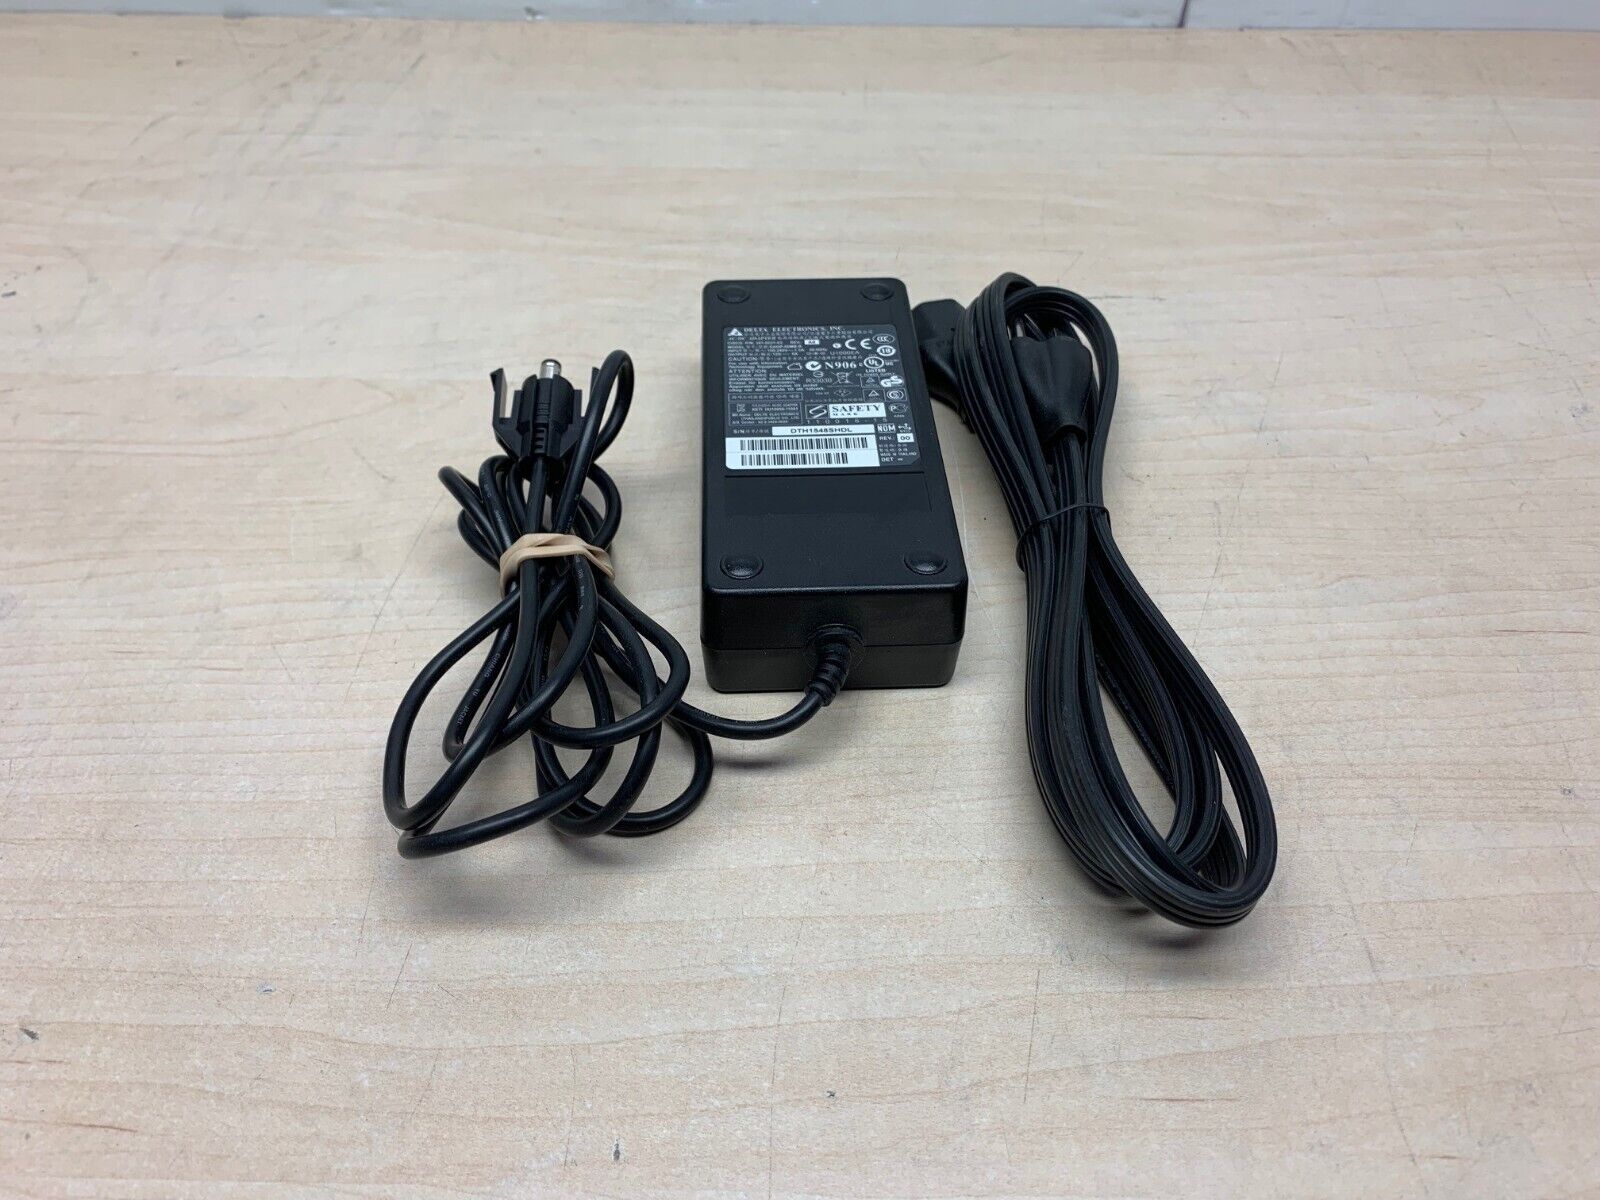 Cisco PWR-60W-AC PSU Cisco 341-0231-03 12v 5A Power Adapter